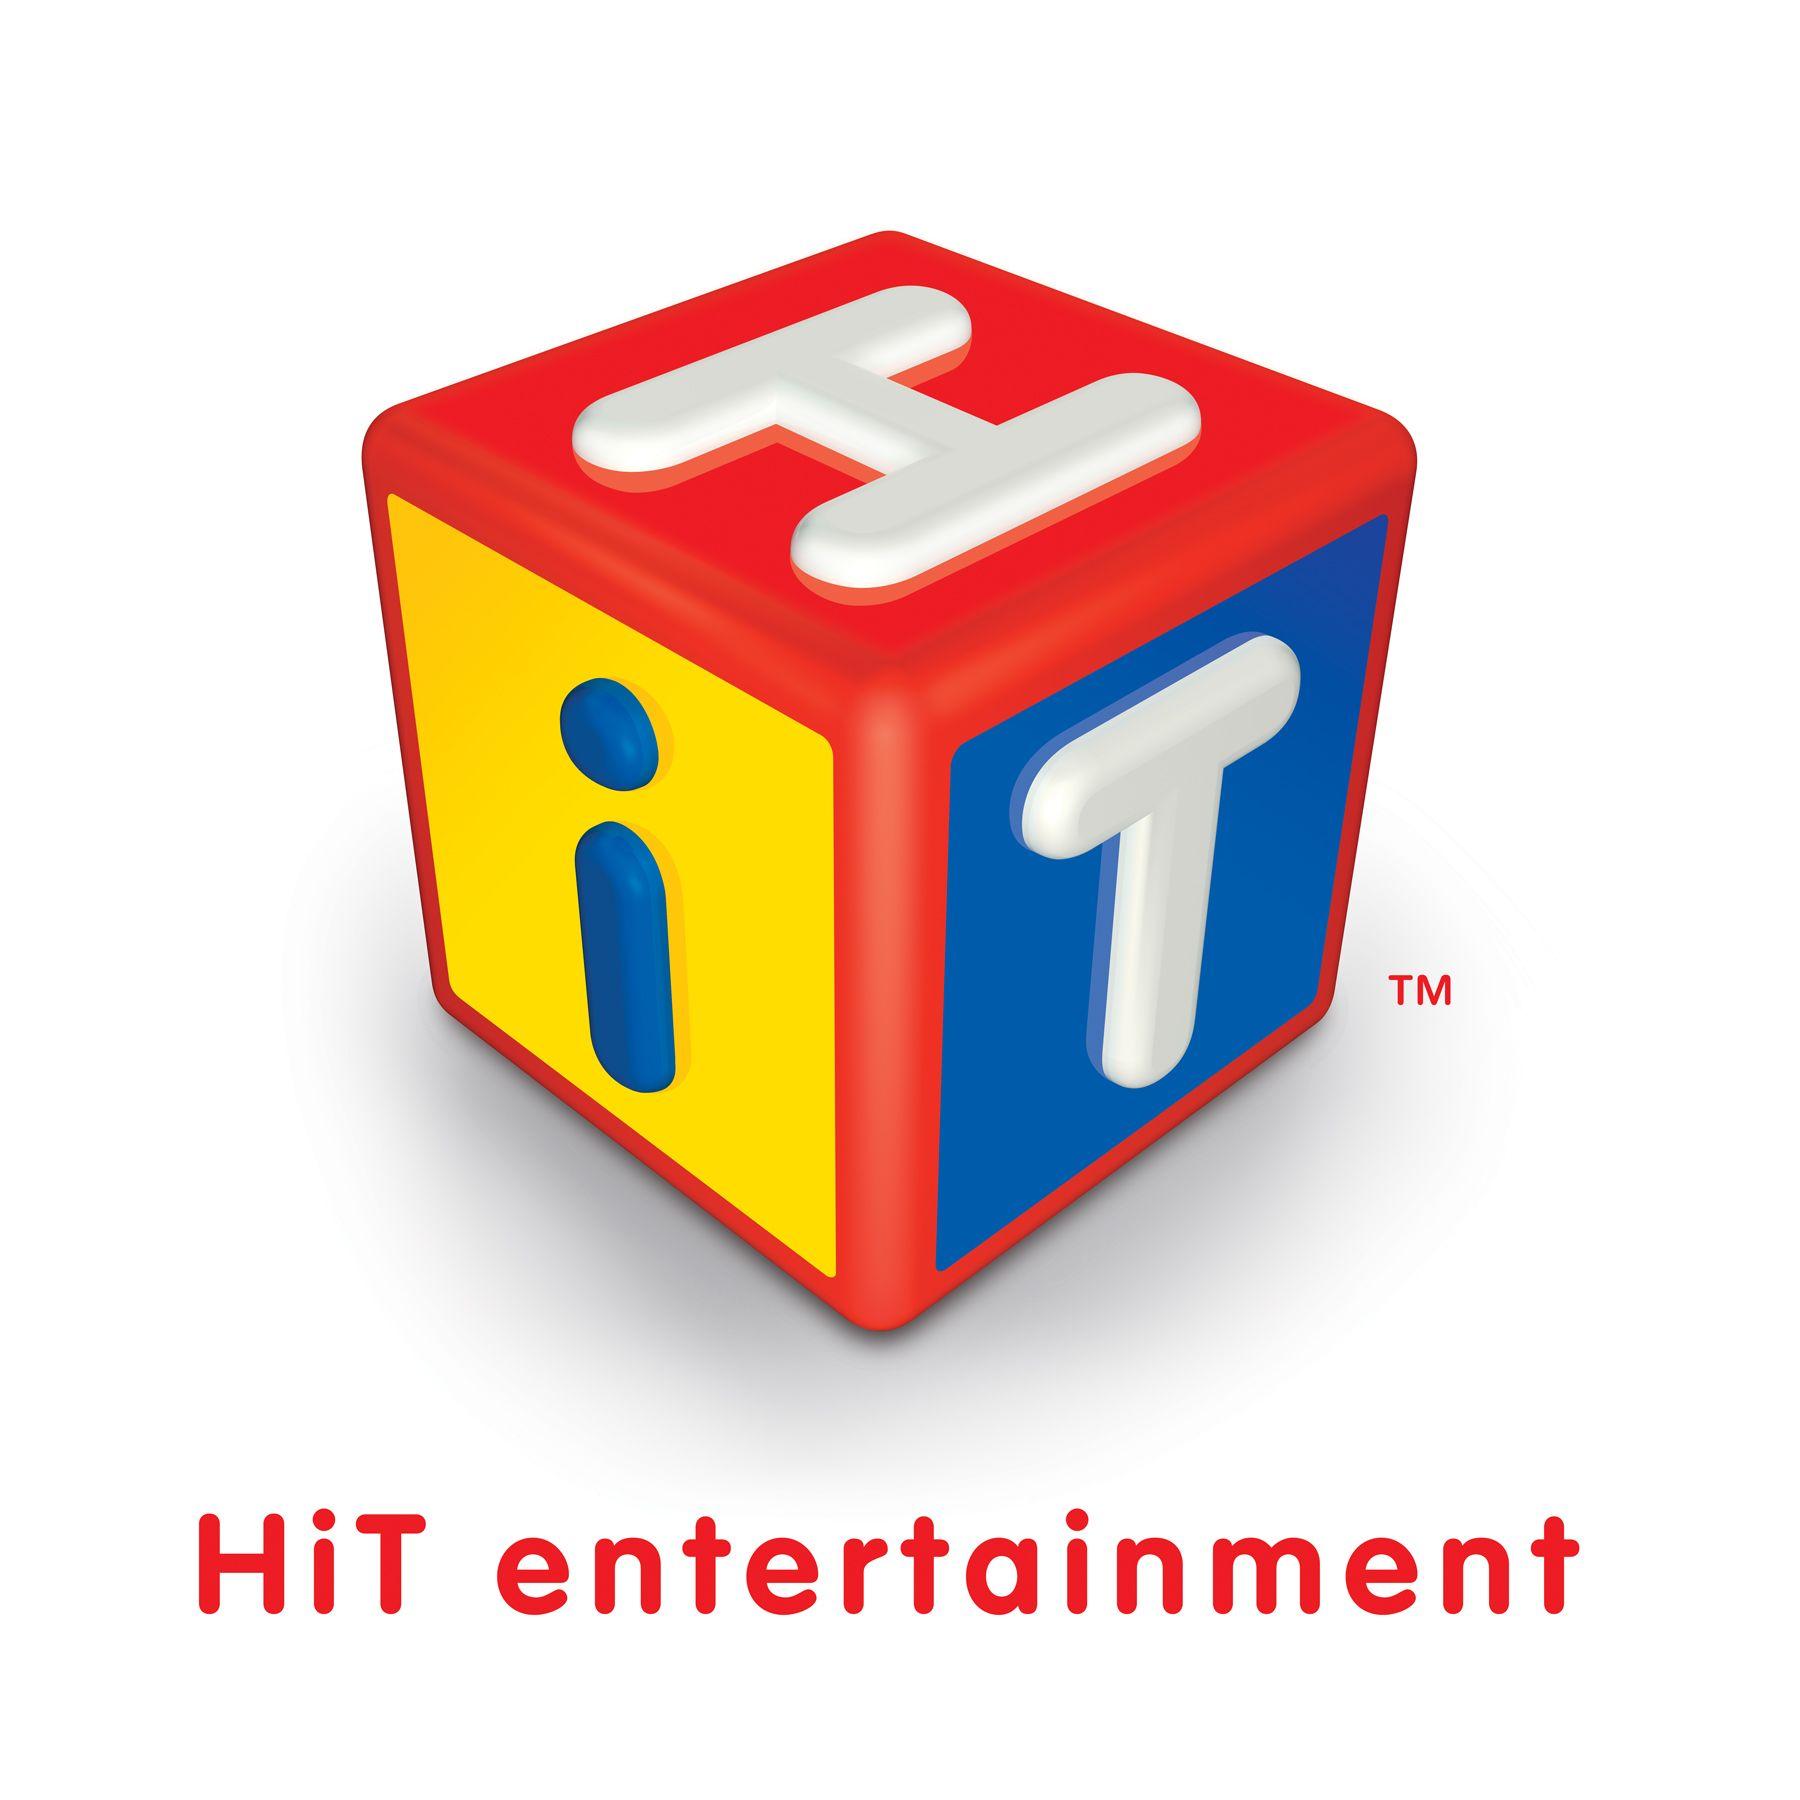 Hit Entertainment Logo - Hit entertainment Logos